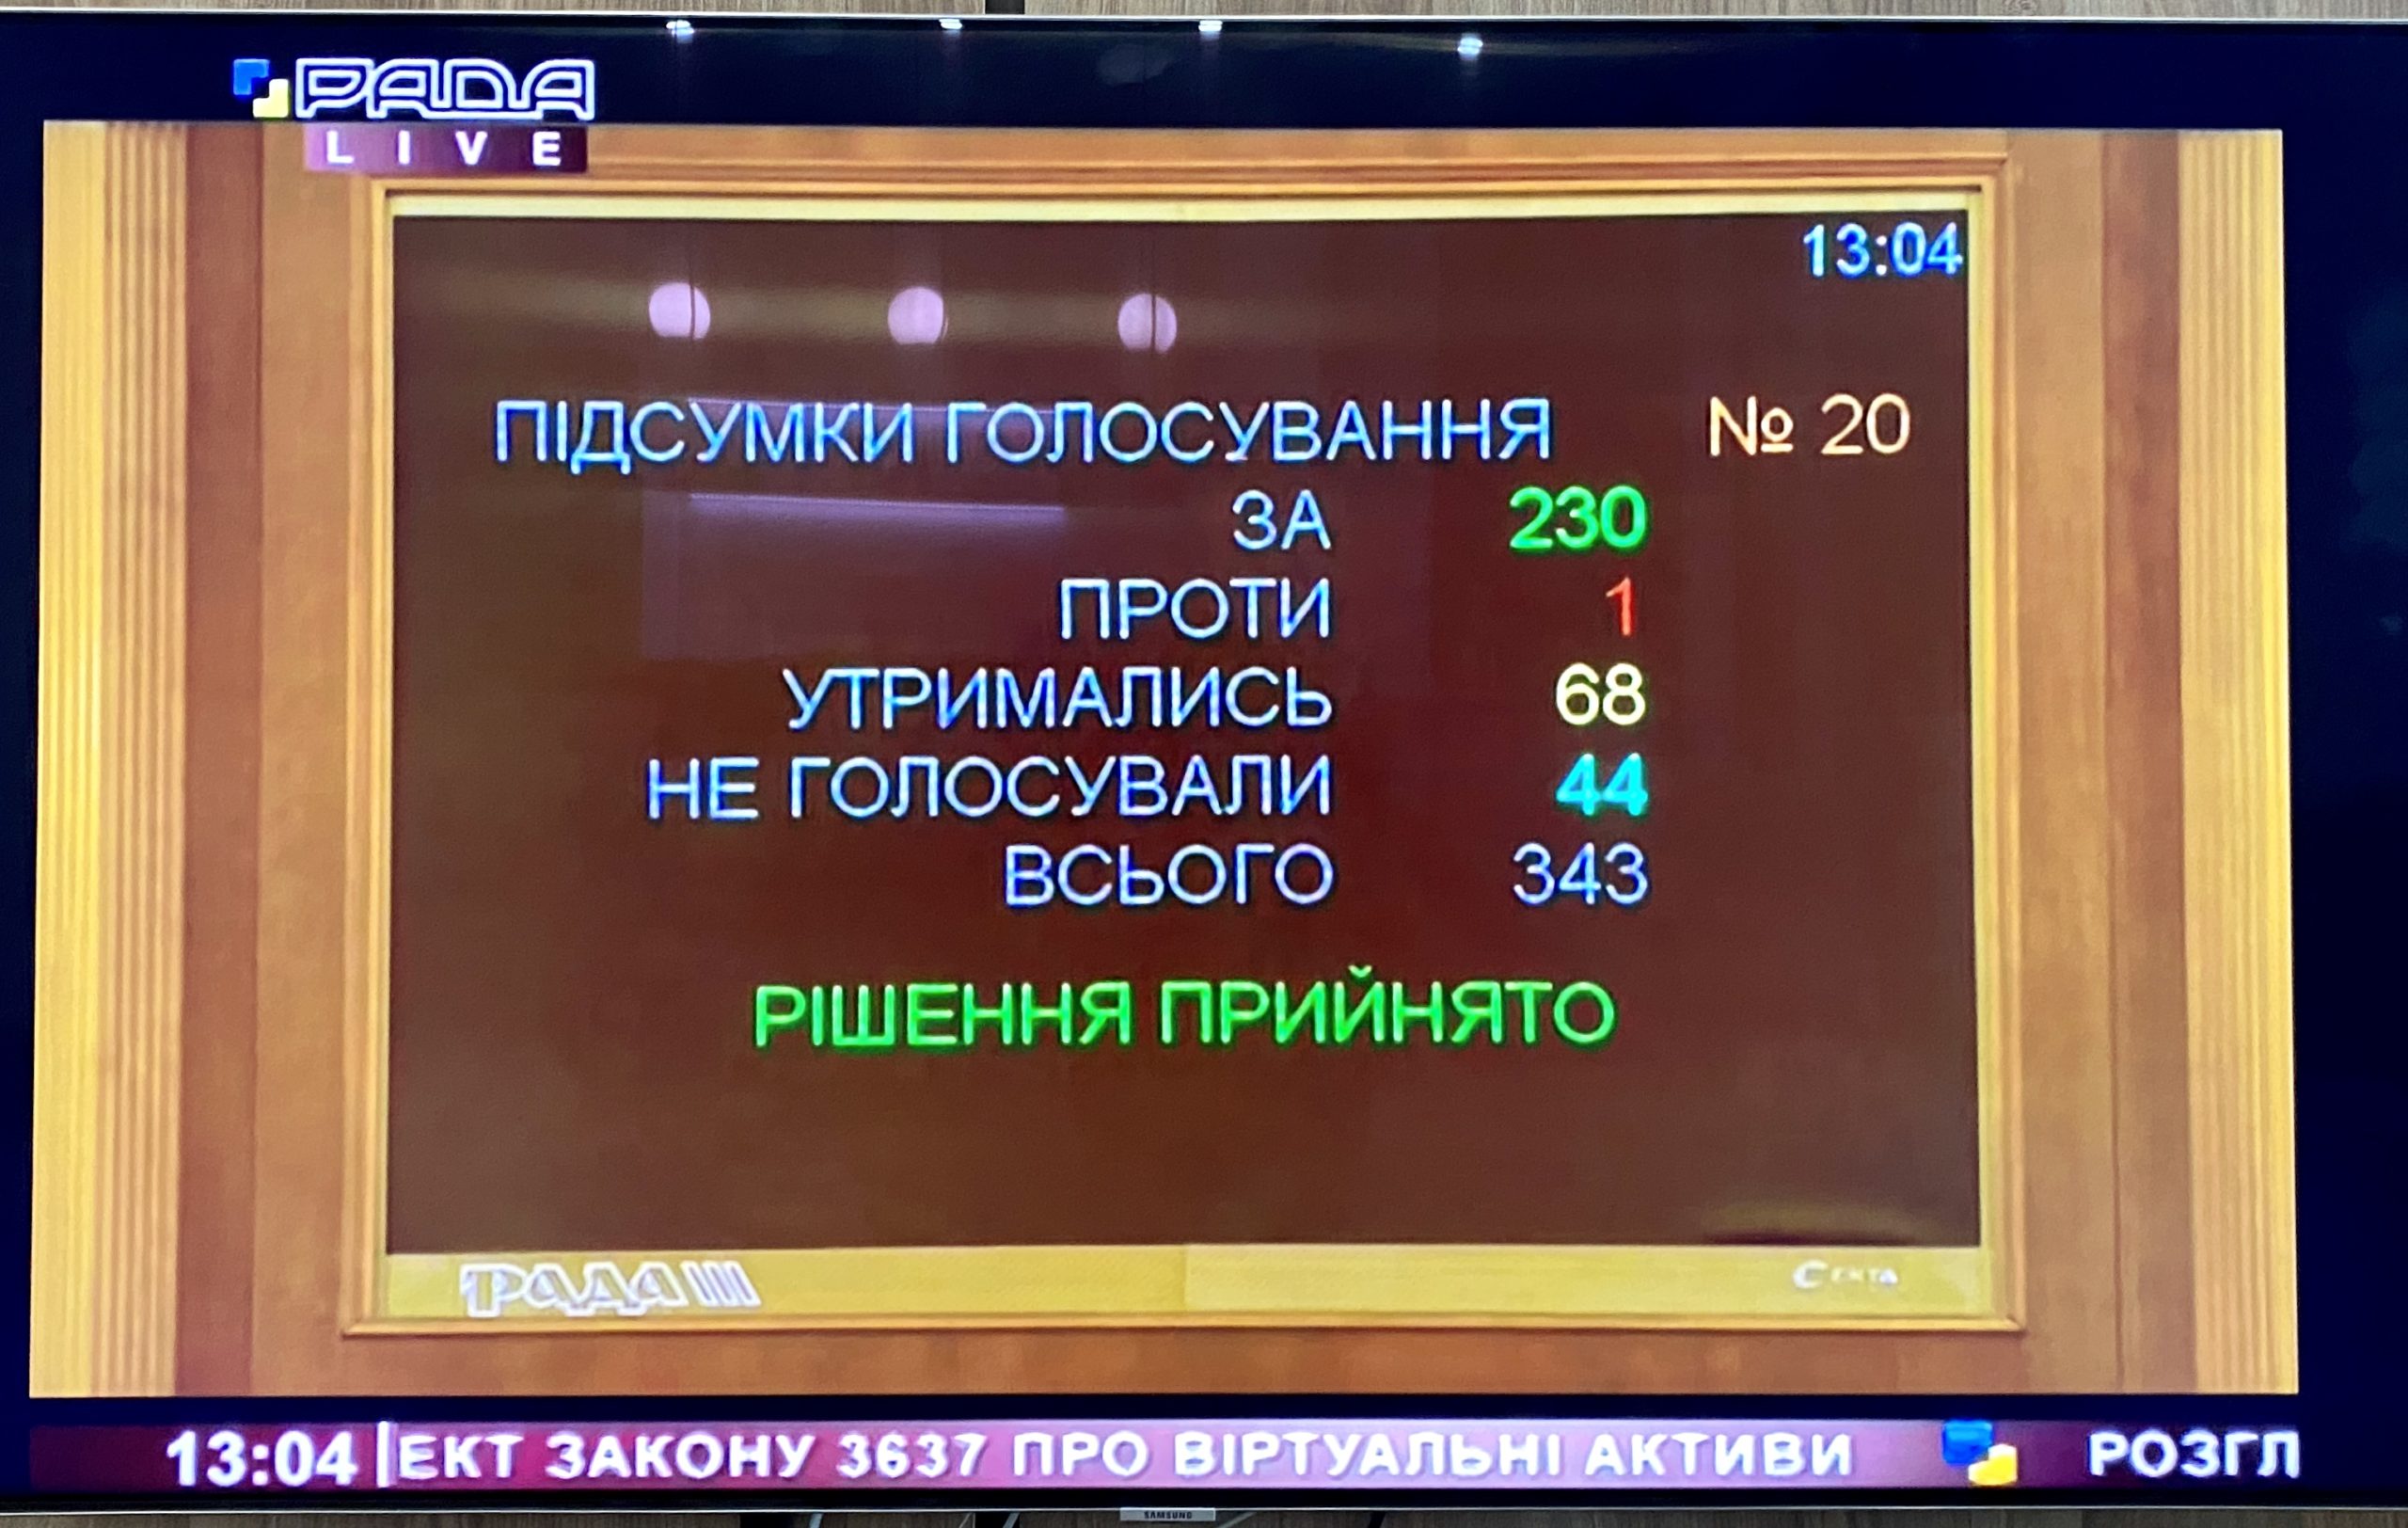 Верховная Рада Украины приняла законопроект «О виртуальных активах» в первом чтении